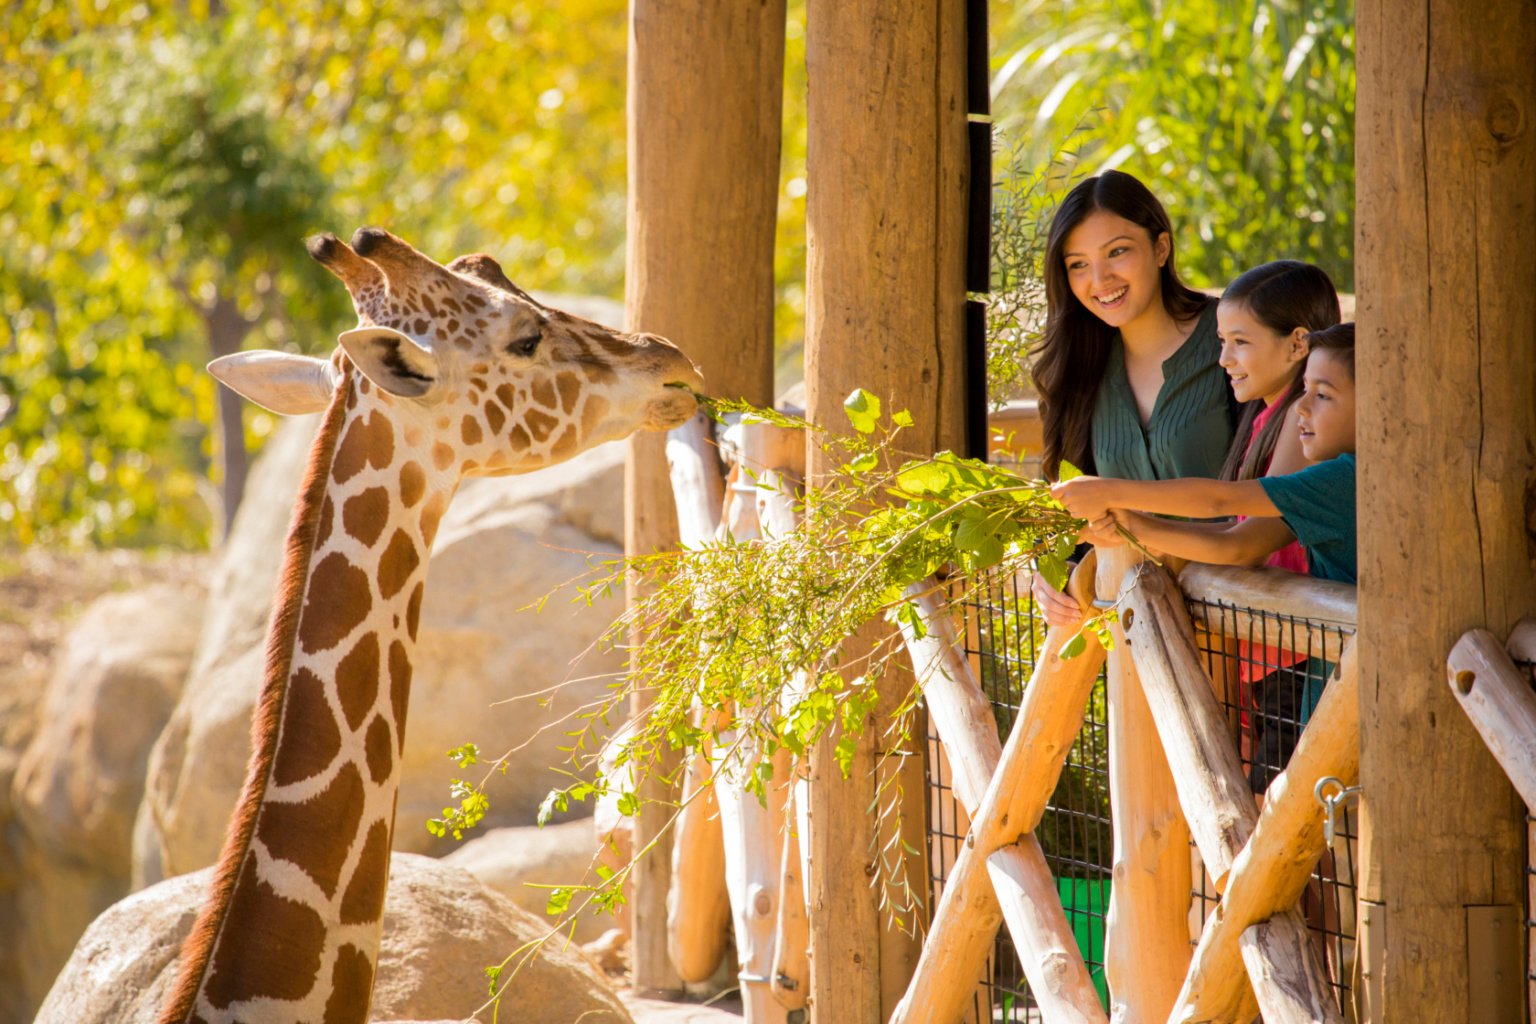 Girafa a comer com a família